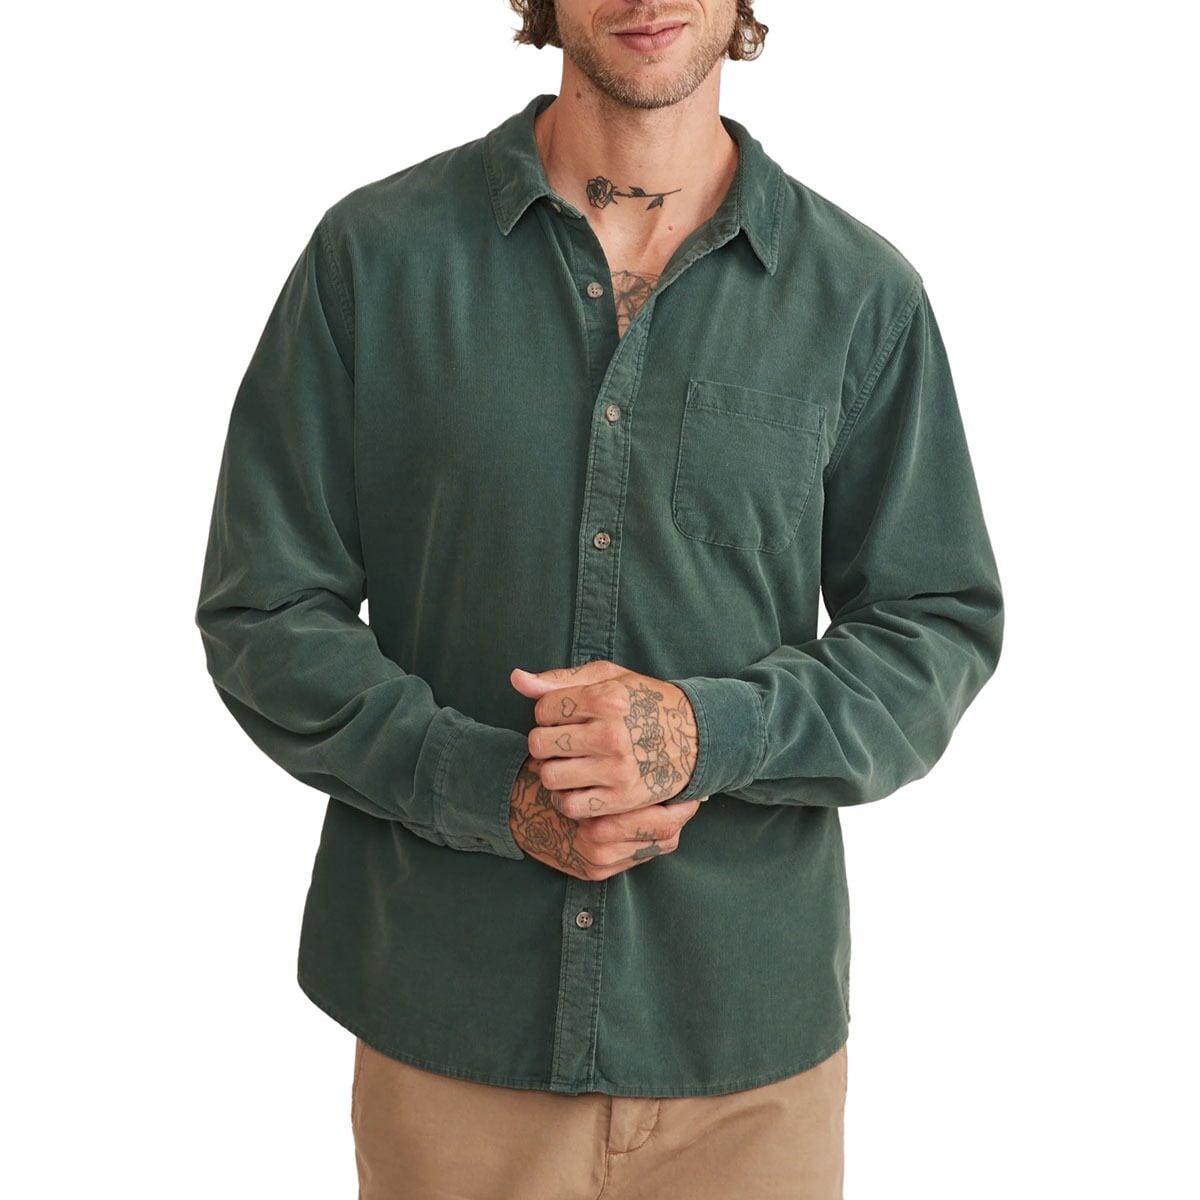 Marine Layer Long-Sleeve Lightweight Cord Shirt - Men's